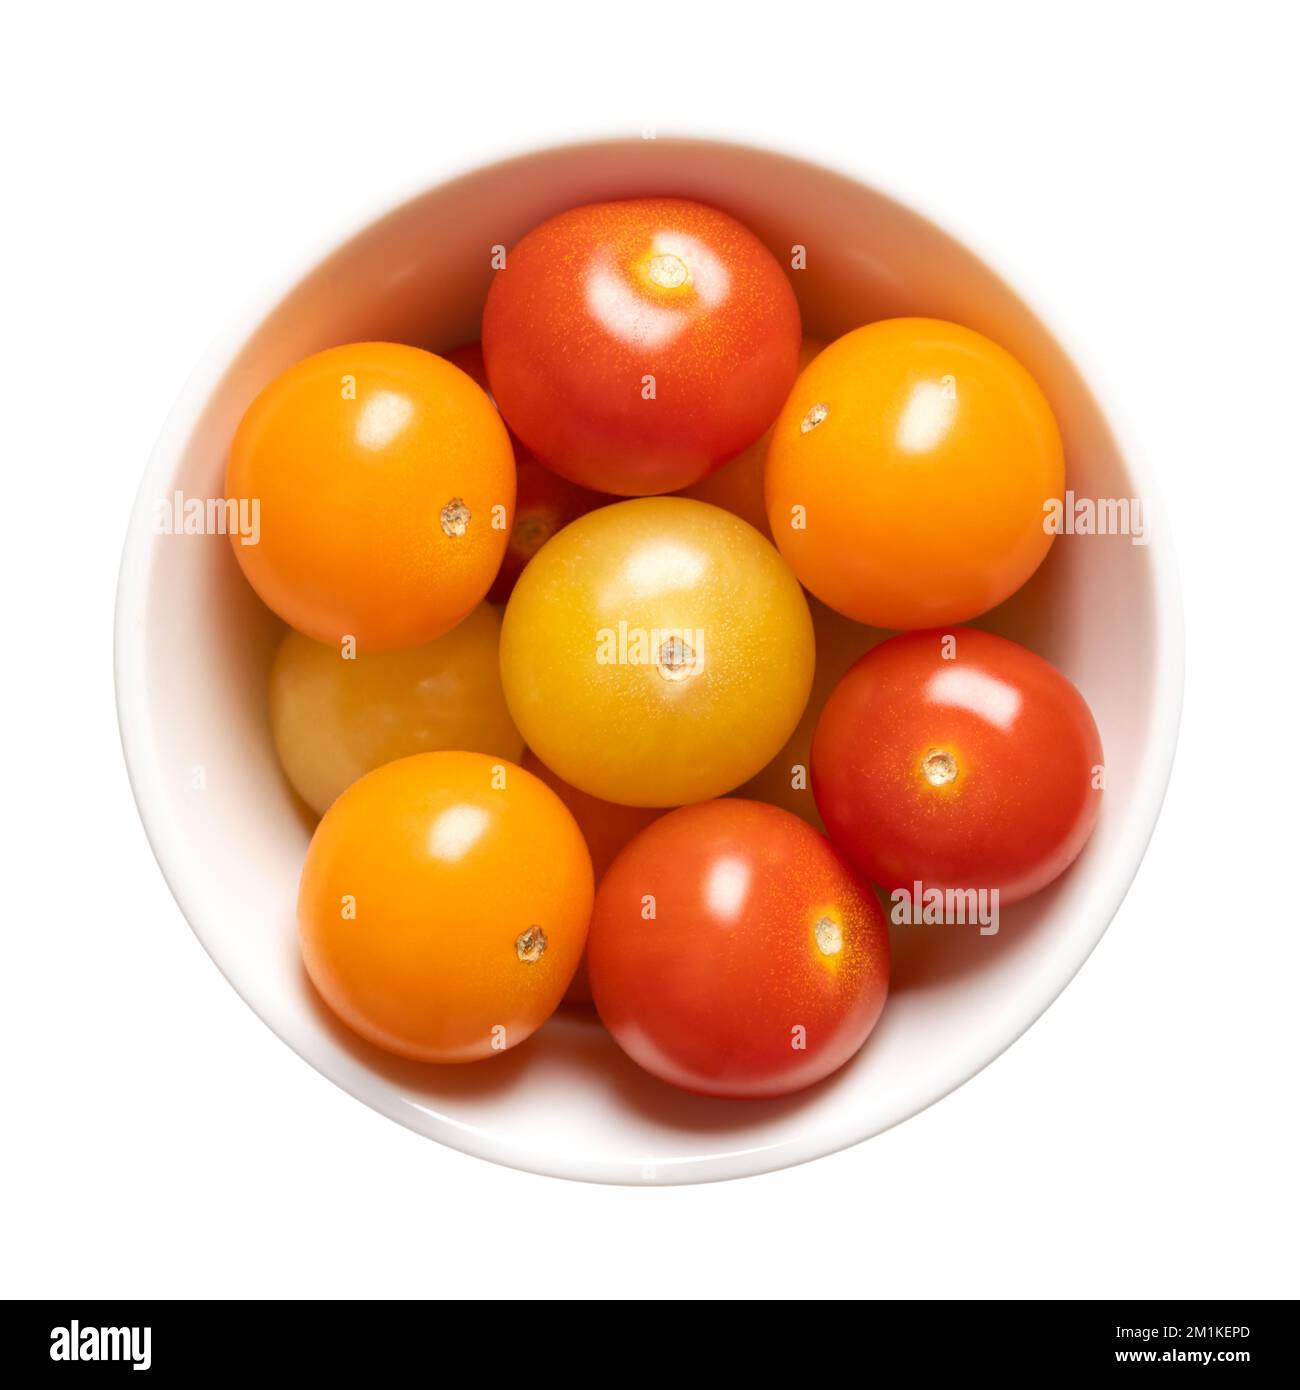 Pomodori ciliegini colorati in una ciotola bianca. Tipo fresco e maturo di pomodori piccoli e tondi da cocktail, di colore rosso, giallo e arancione. Foto Stock